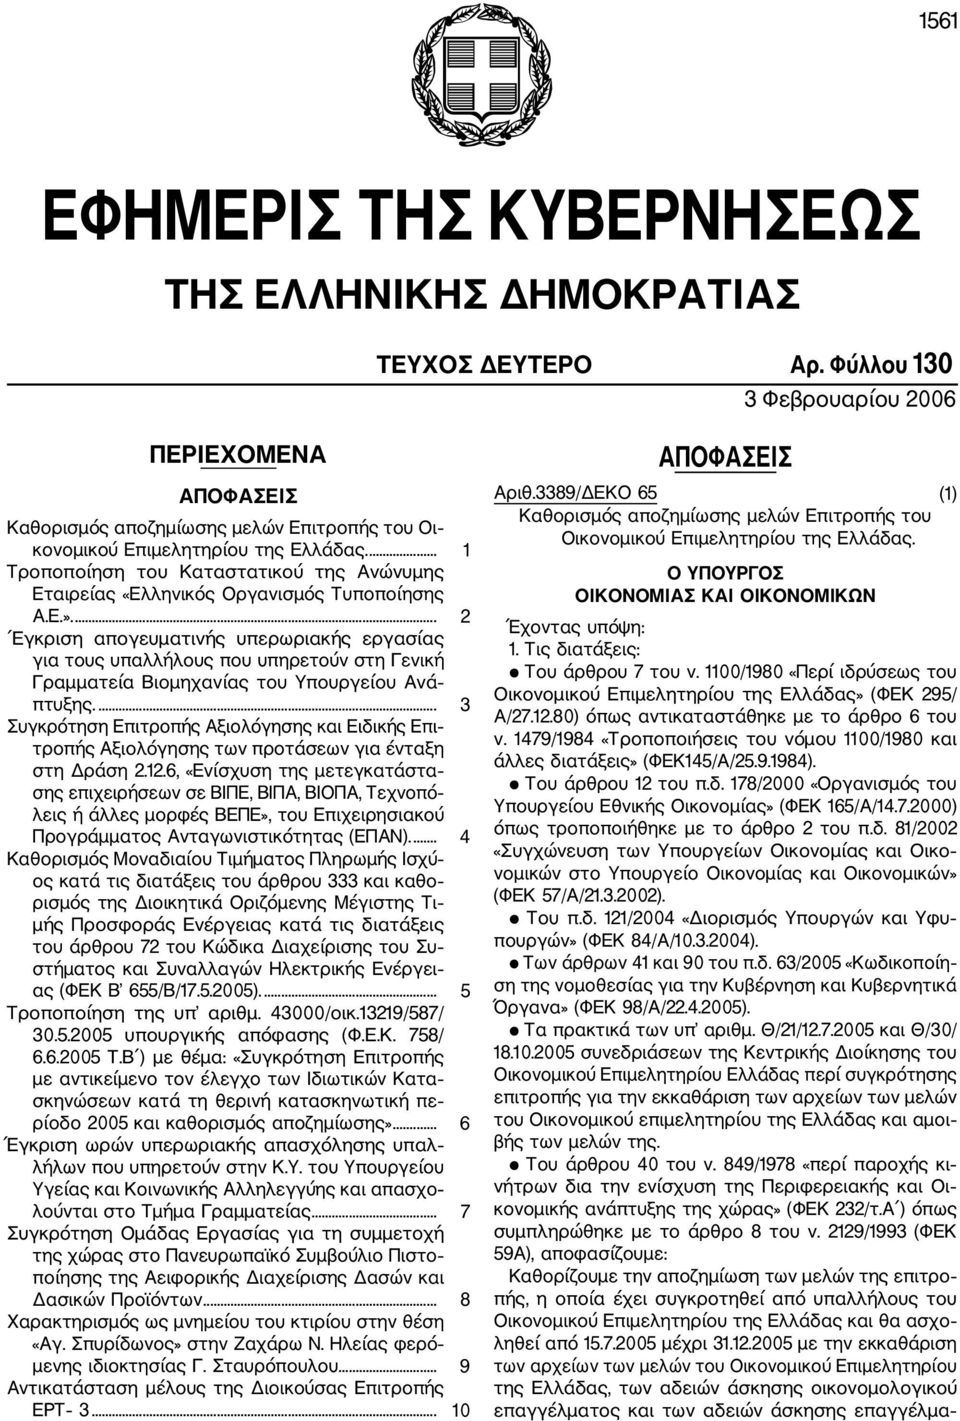 ... 1 Τροποποίηση του Καταστατικού της Ανώνυμης Εταιρείας «Ελληνικός Οργανισμός Τυποποίησης Α.Ε.».